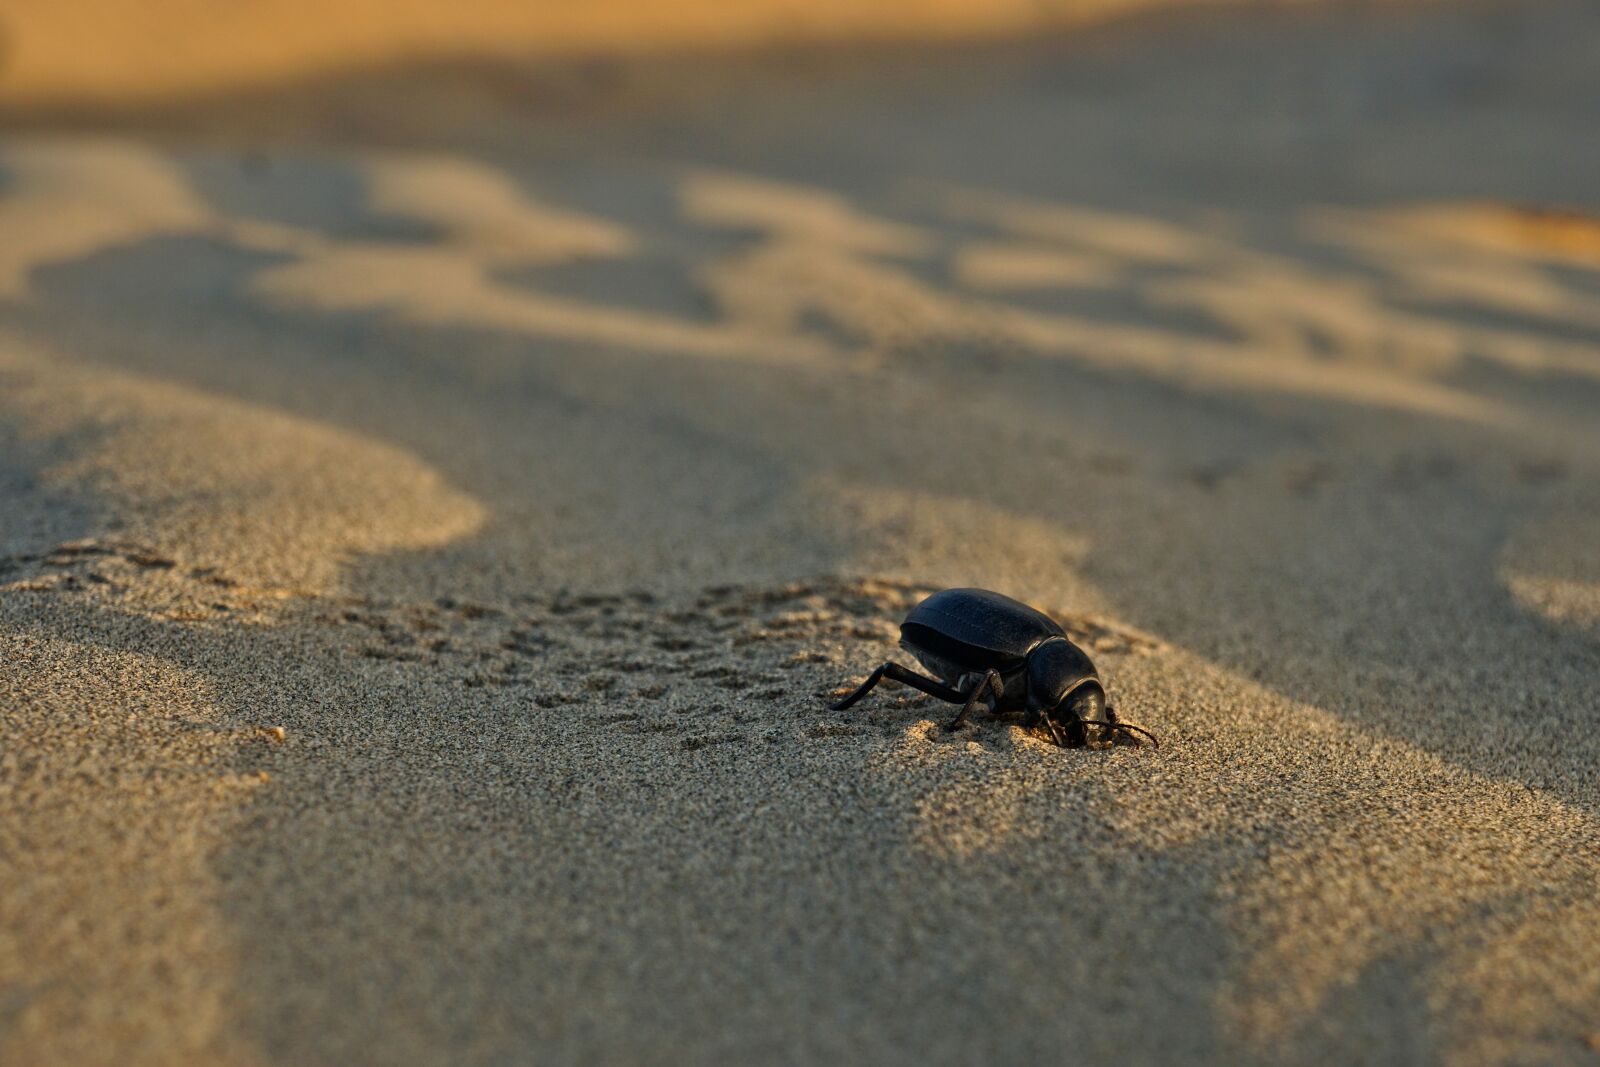 Sony a6000 sample photo. Beetle, sand, beach photography